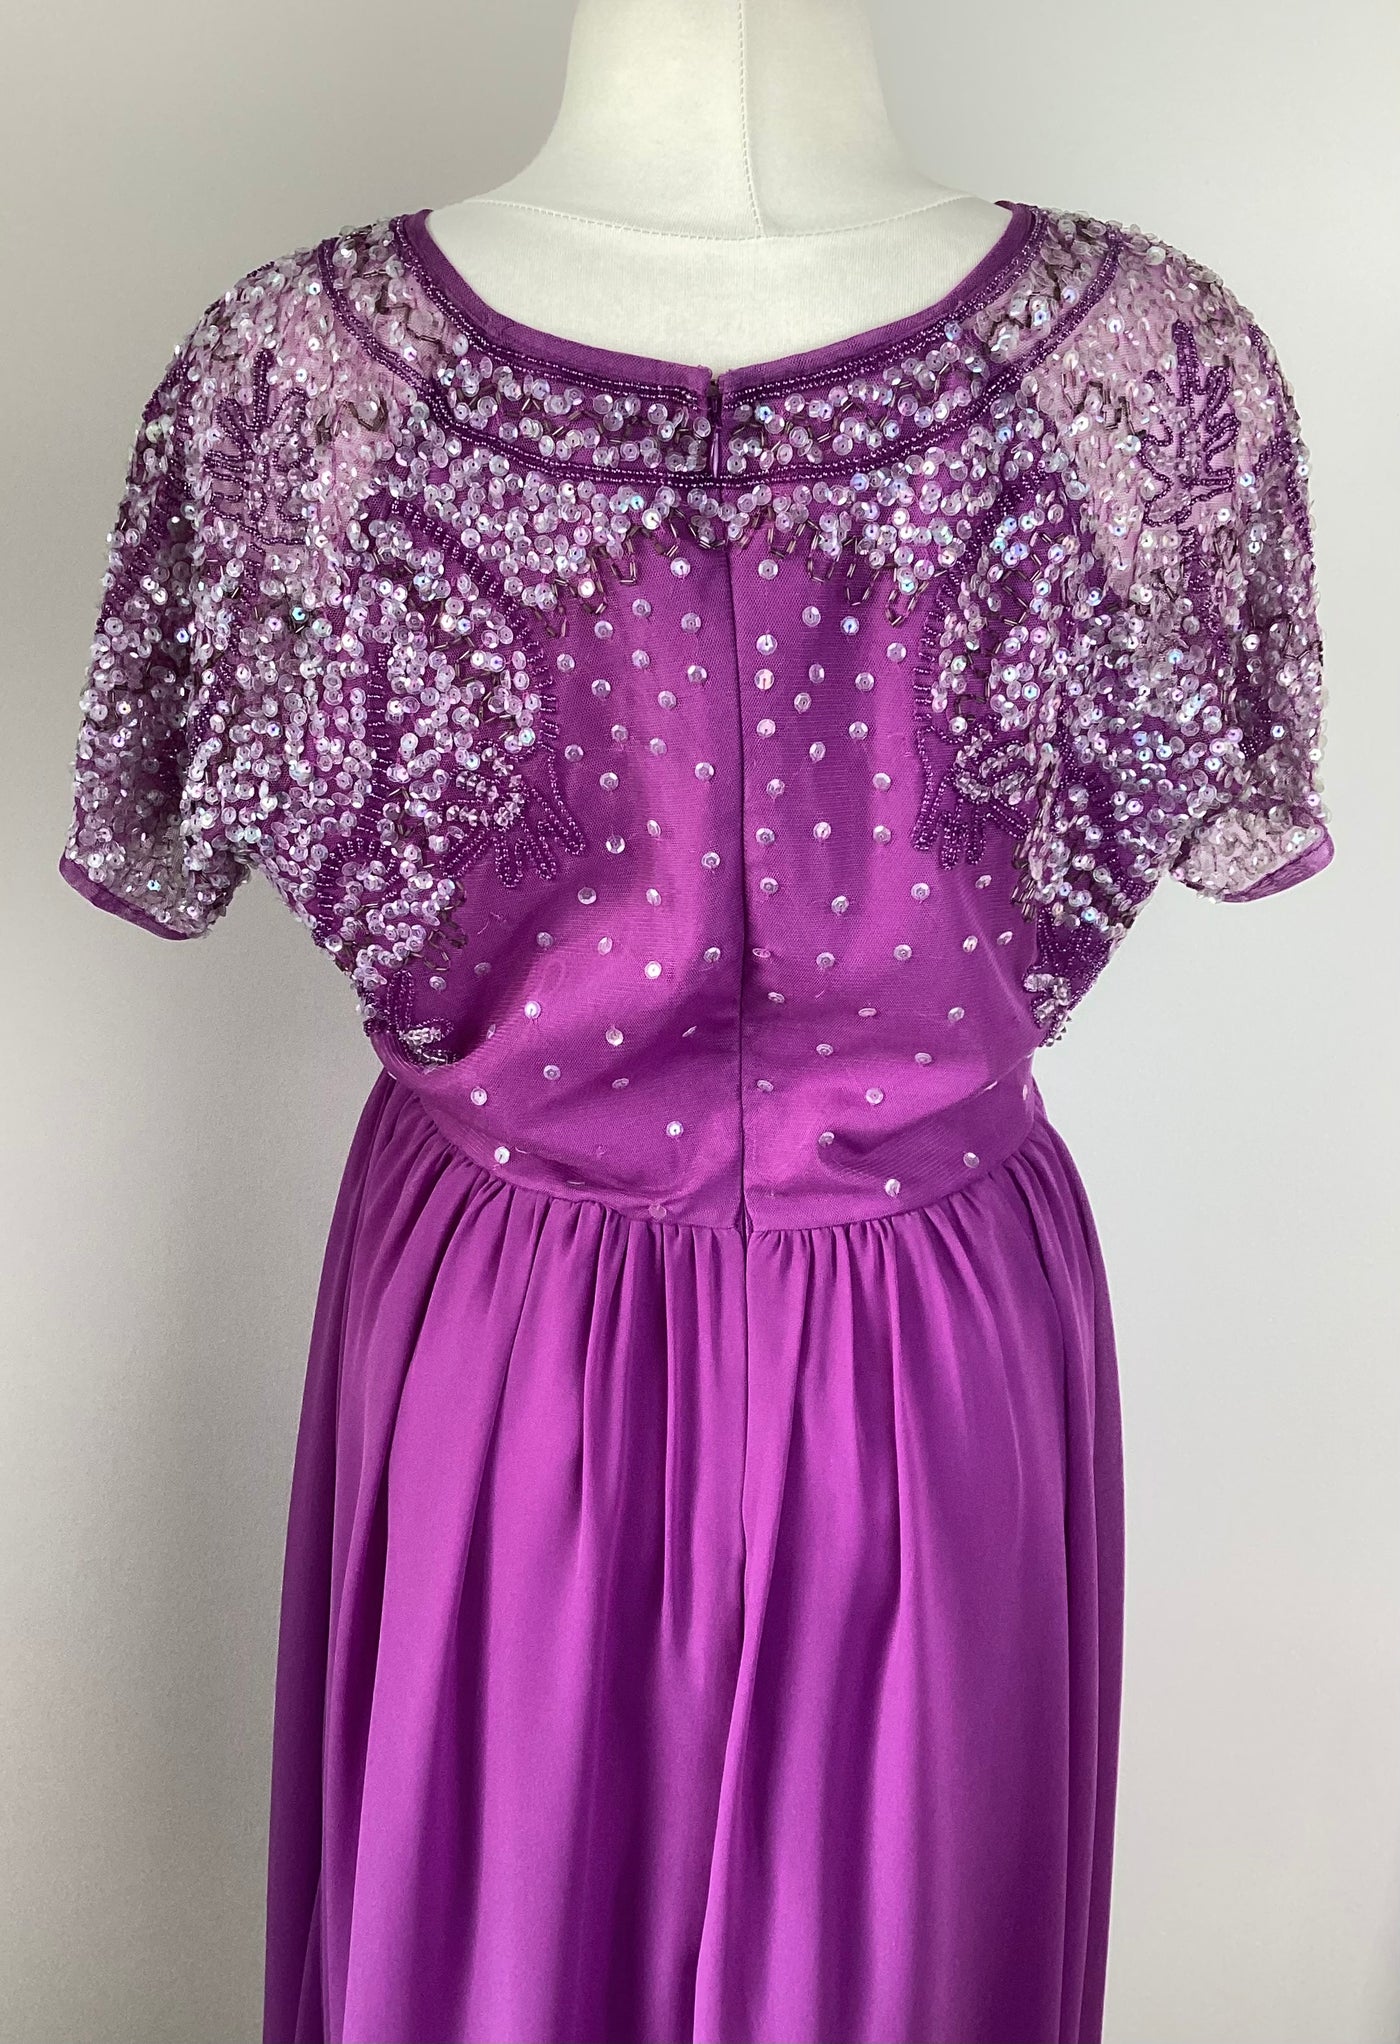 Purple sequin top midi dress (no label) - Size 12/14